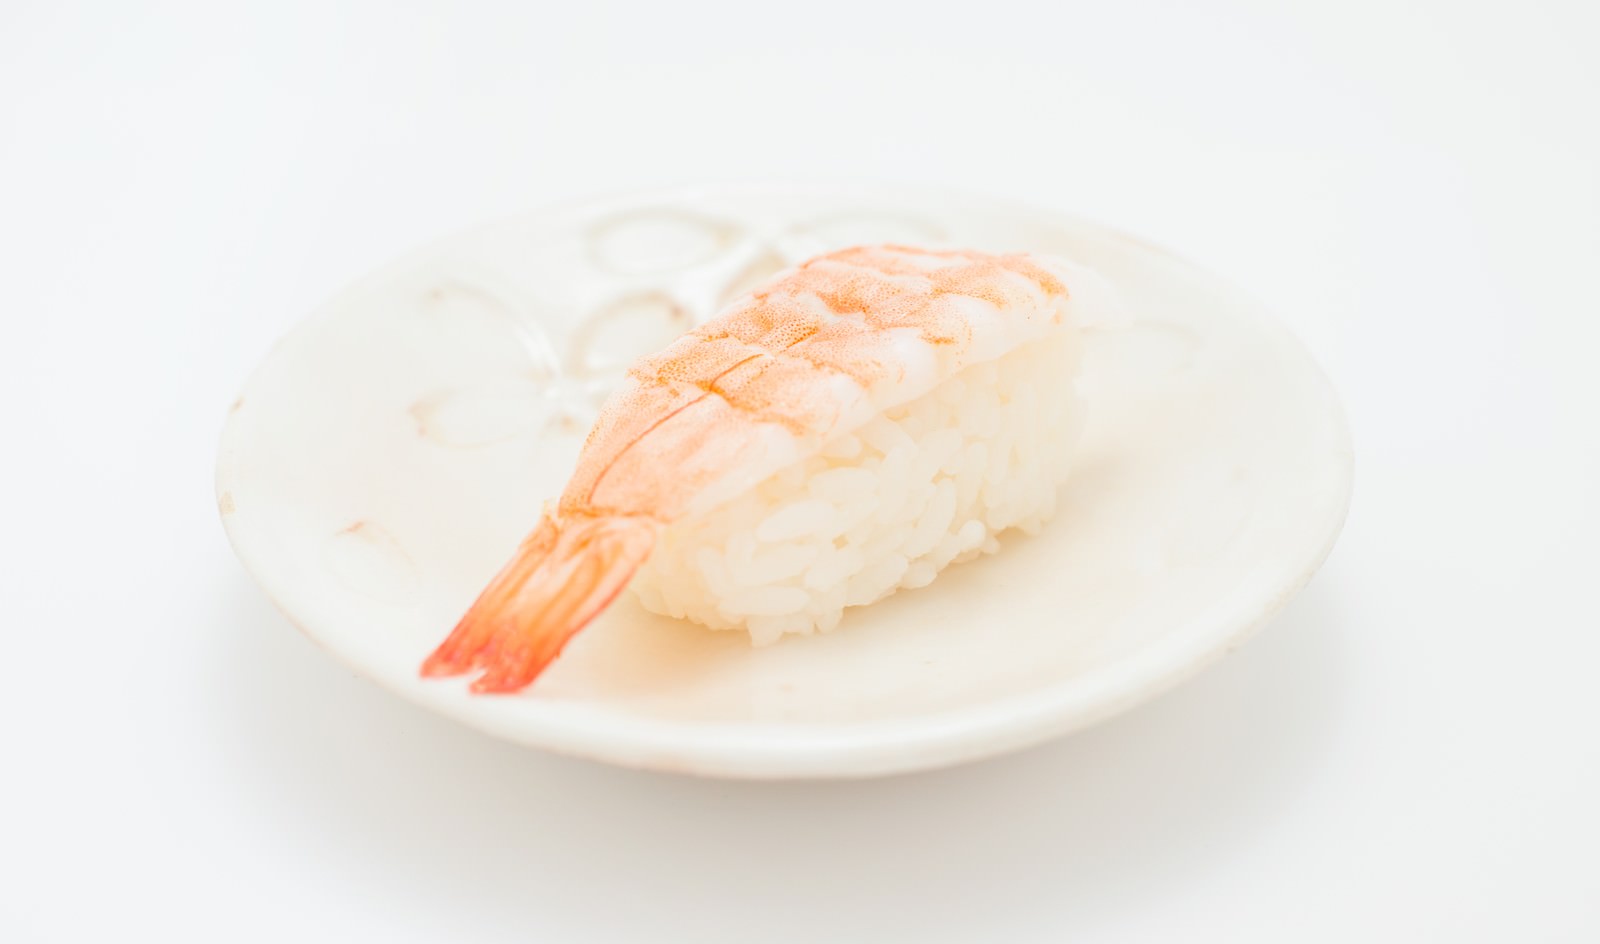 海老の寿司 一貫 の無料の写真素材 フリー素材 をダウンロード ぱくたそ